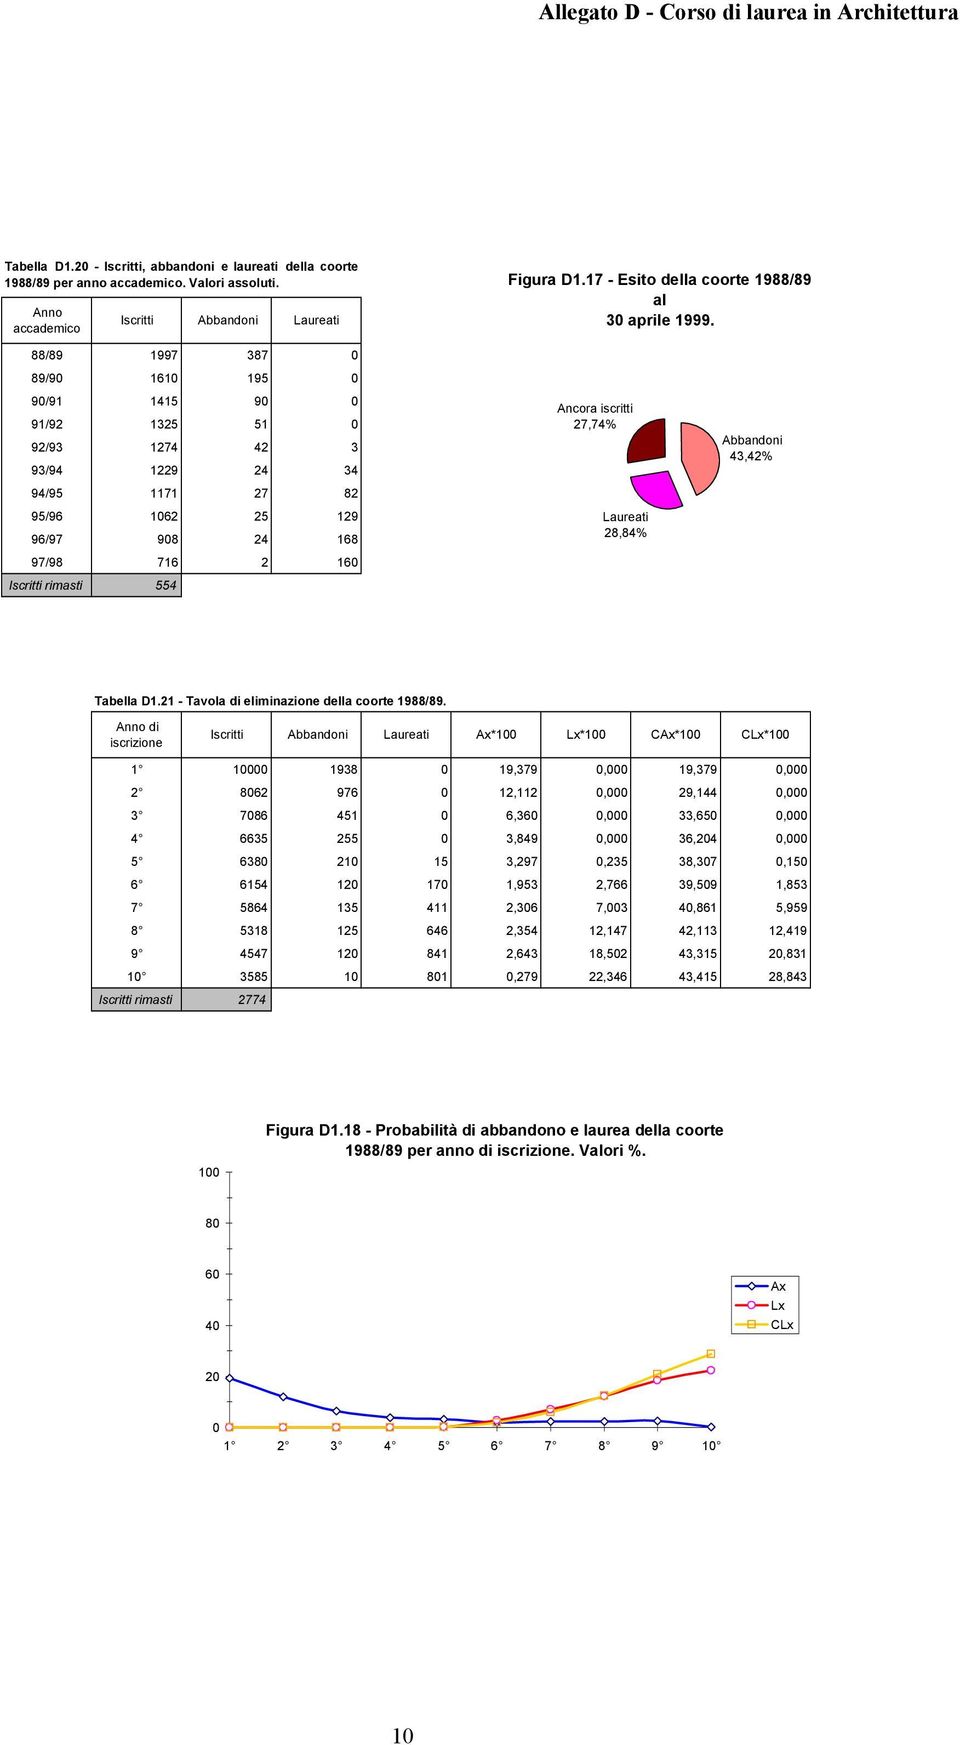 Laureati 28,84% 43,42% Tabella D1.21 - Tavola di eliminazione della coorte 1988/89.